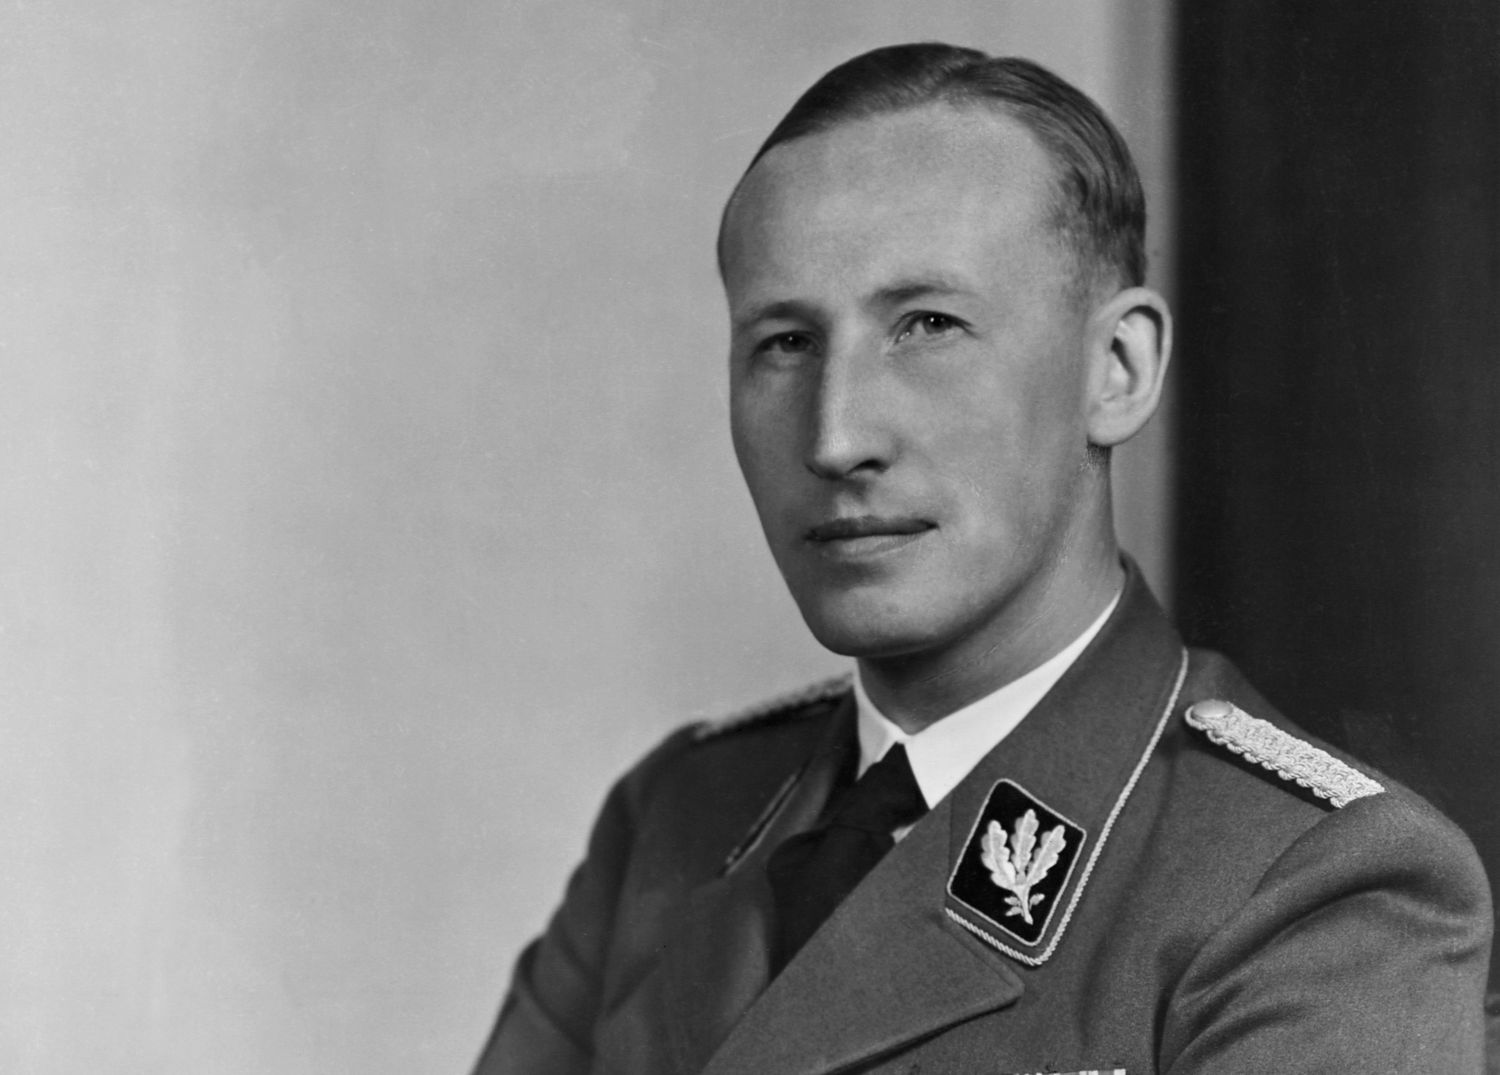 Operazione Anthropoid: l'assassinio del 'boia di Praga' Heydrich e la rappresaglia nazista